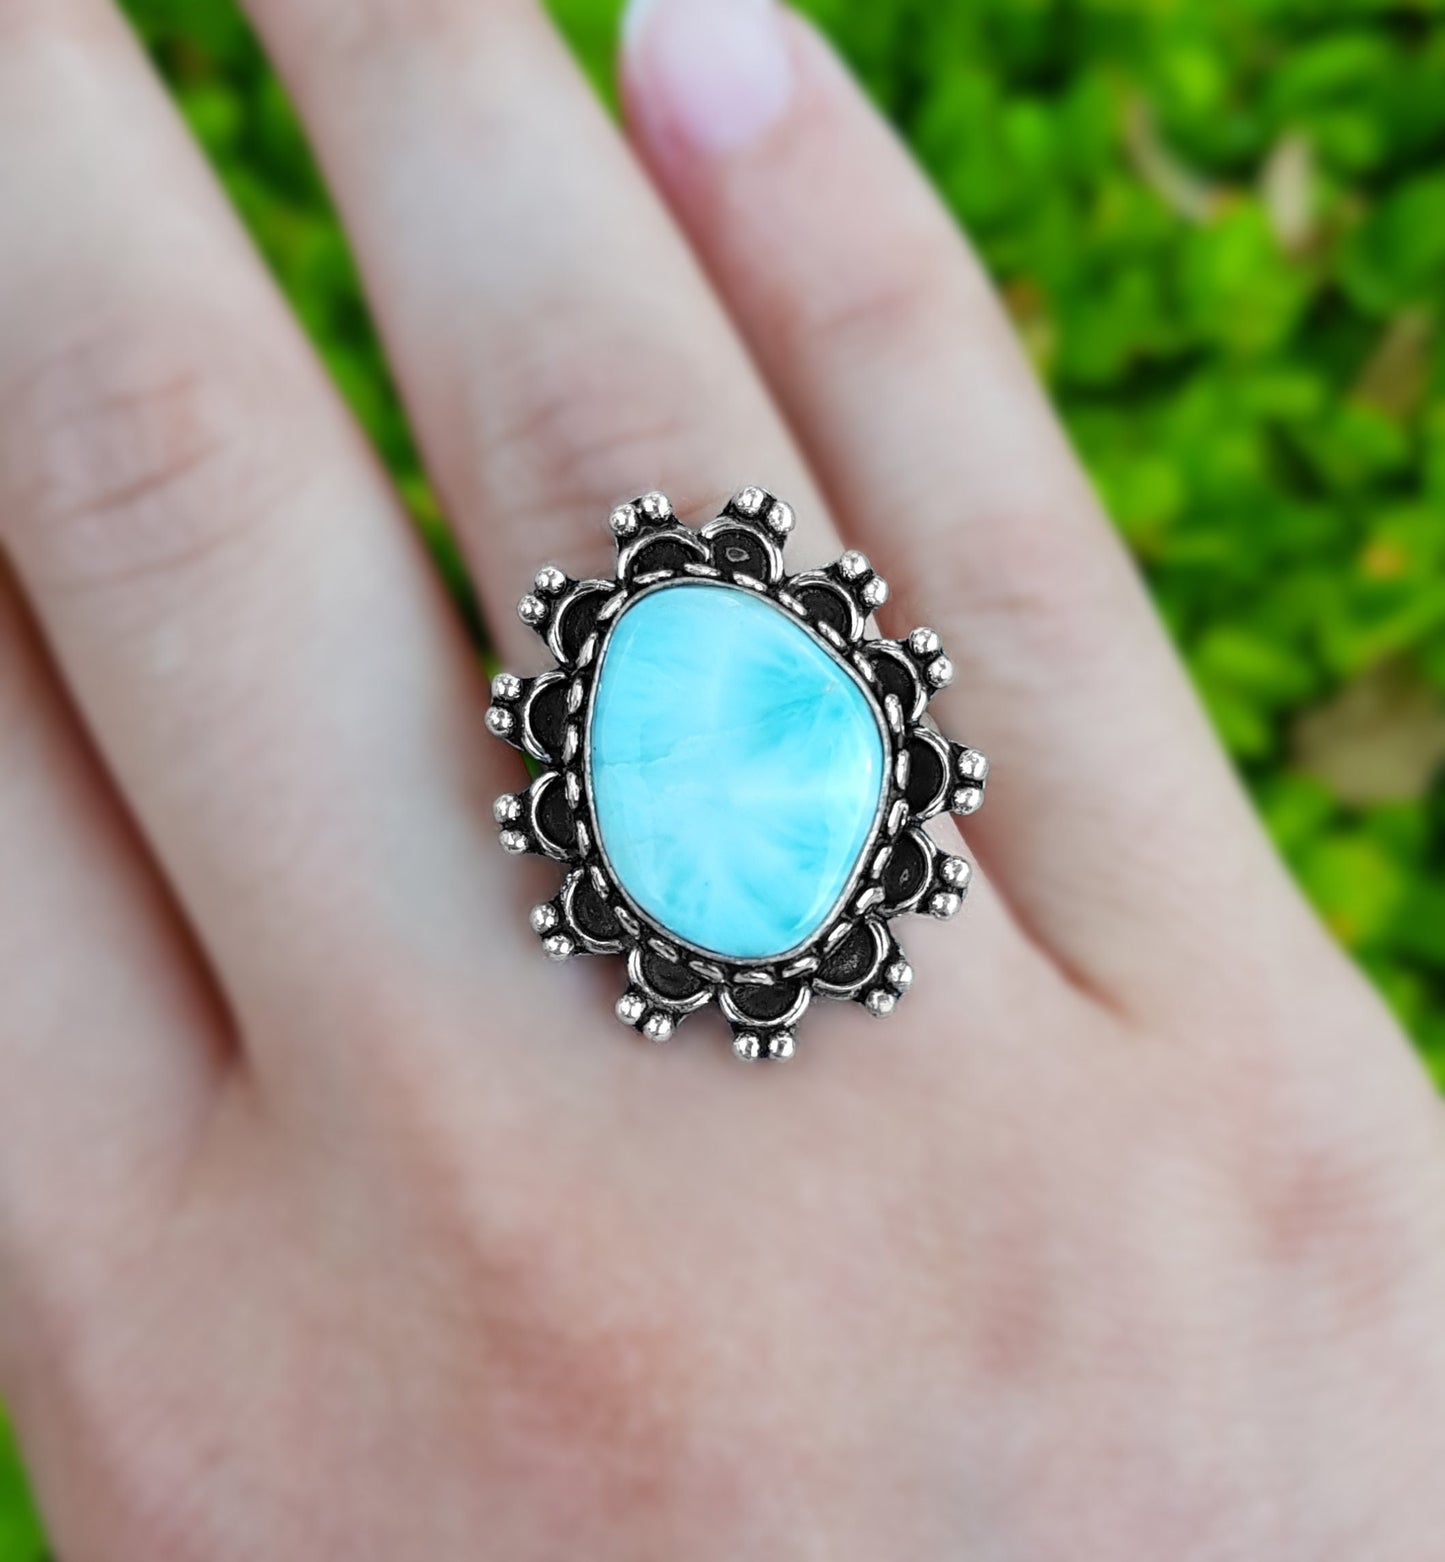 Larimar Statement Ring Size US 7 1/2 Sterling Silver Boho Rings Genuine Grade A Blue Larimar Ring Gemstone Ring